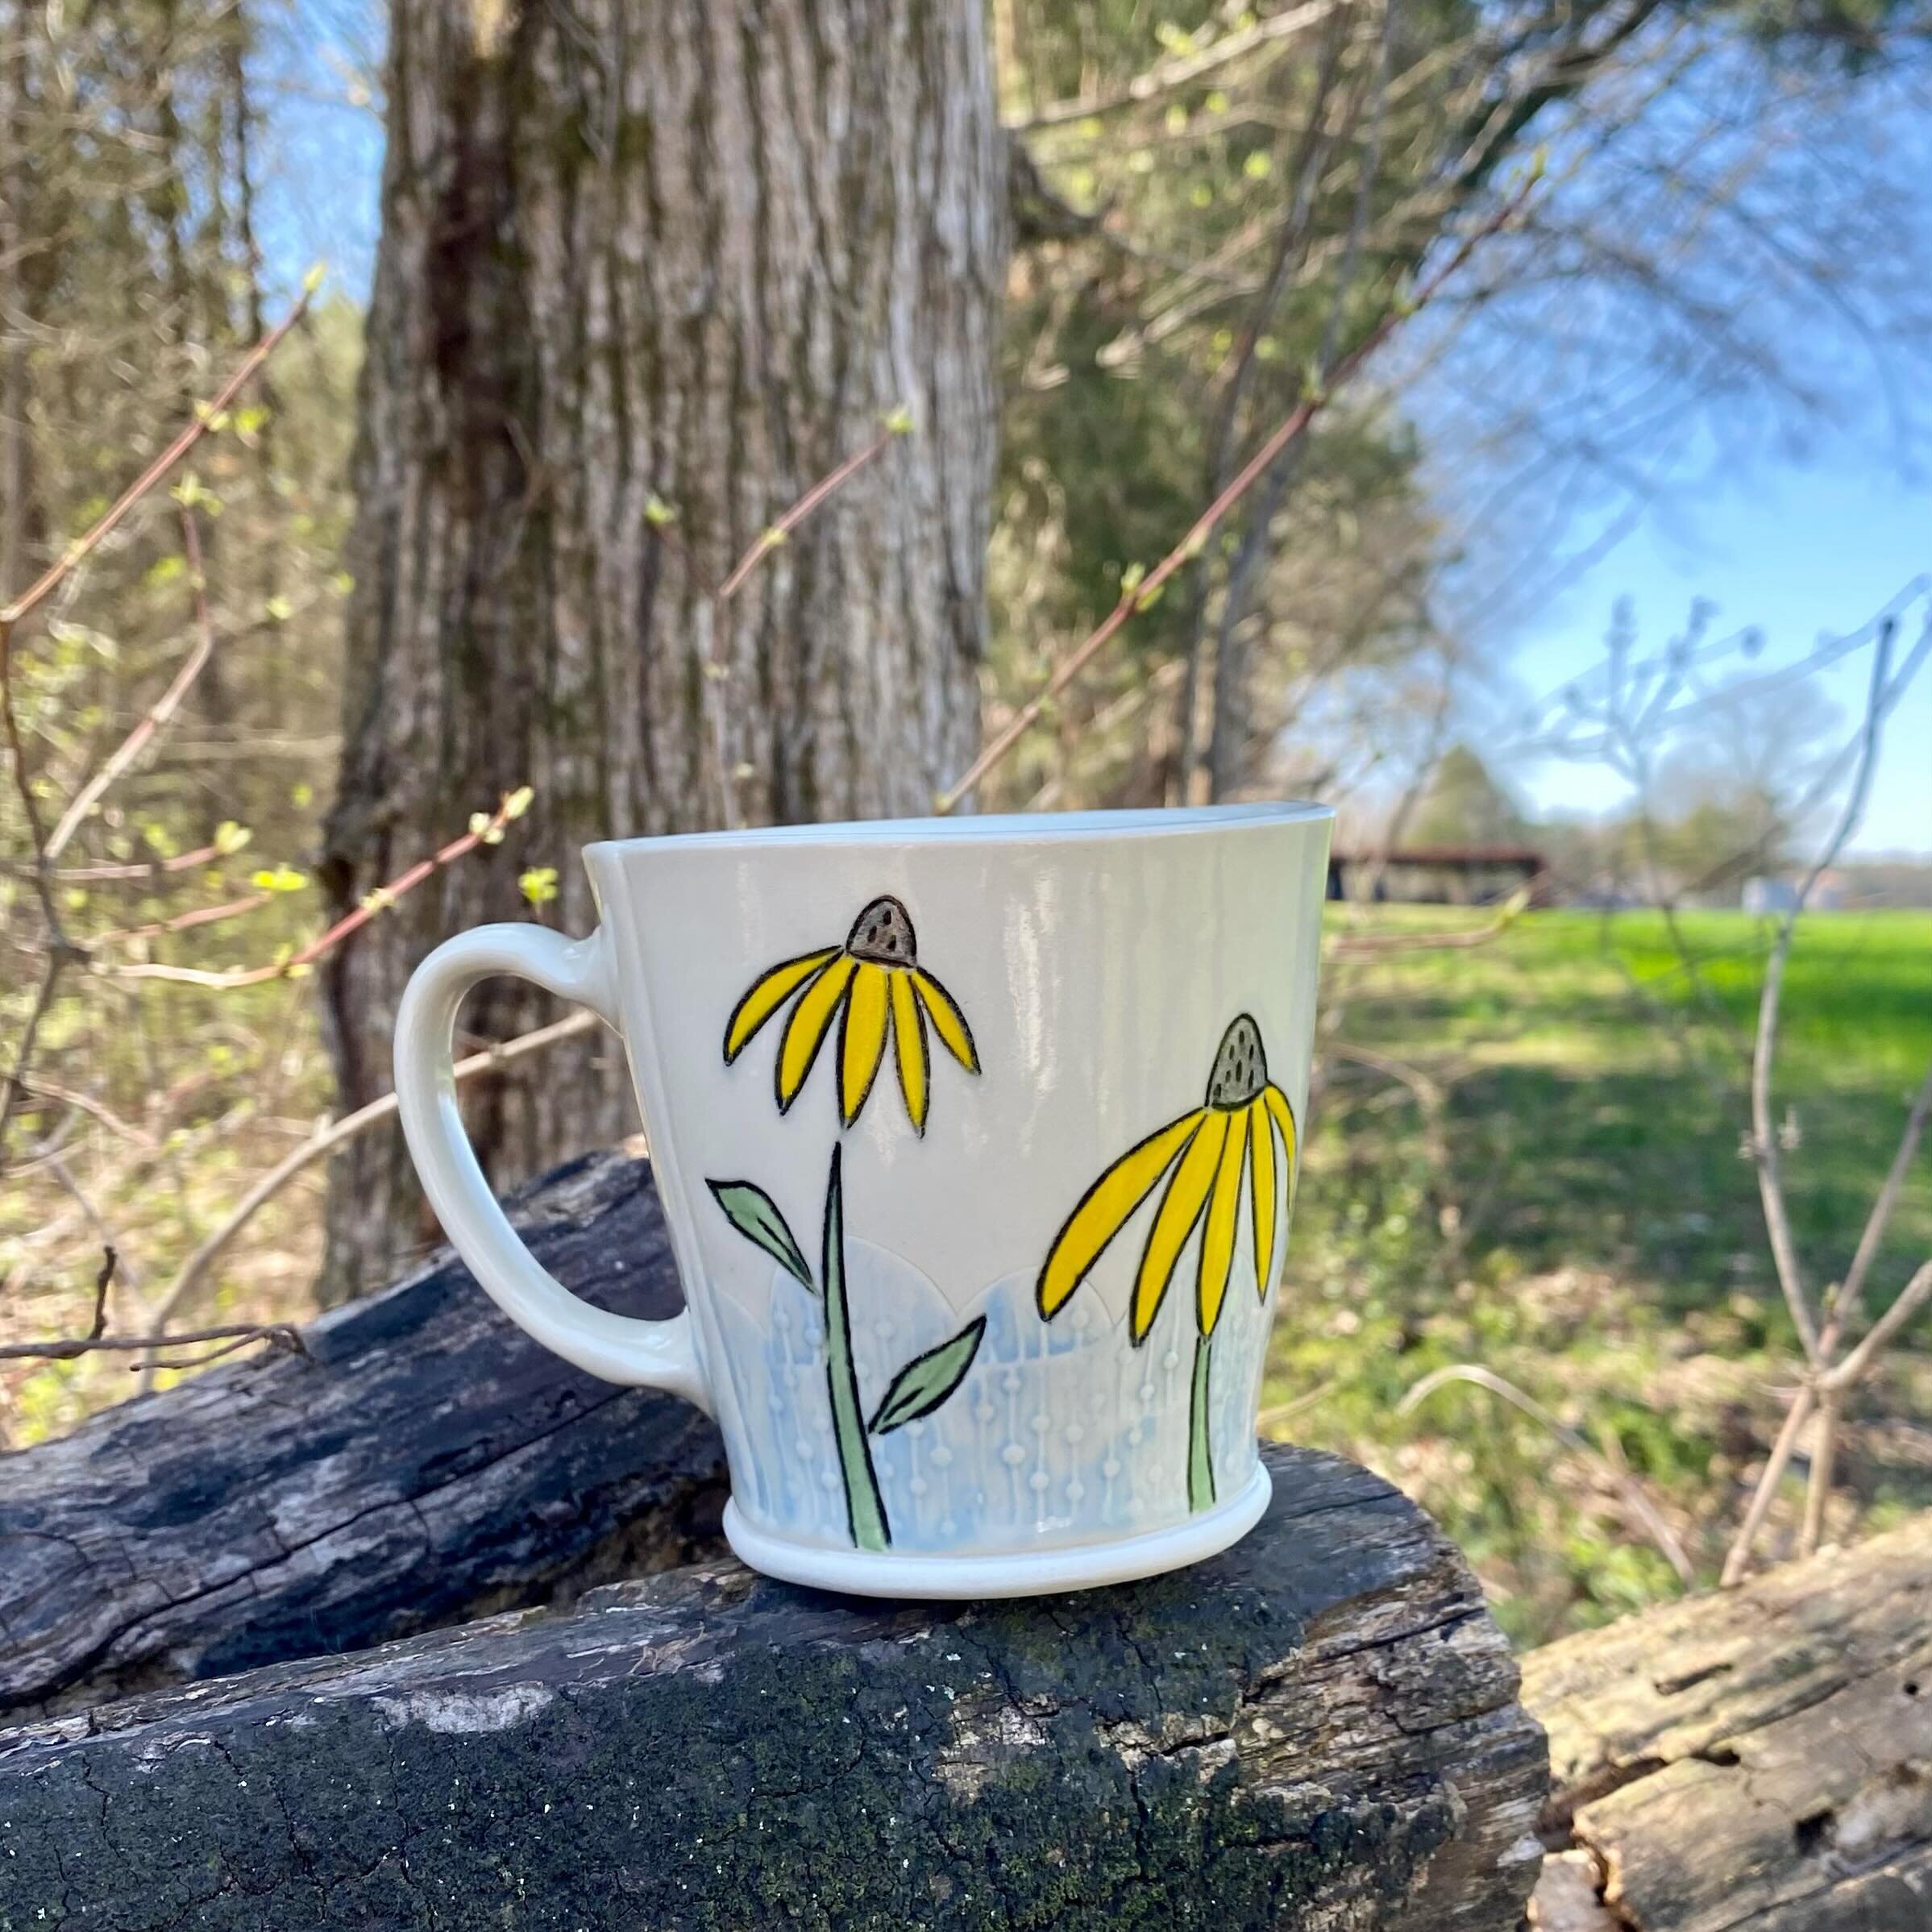 🌿 Happy Spring Equinox! 🌿
.
.
.
.
.
.
.
.
#handbuiltpottery #slabpottery #handmadeceramics #handmadepottery #handbuiltceramics #pottery #ceramicsofinstagram #ceramics #springequinox